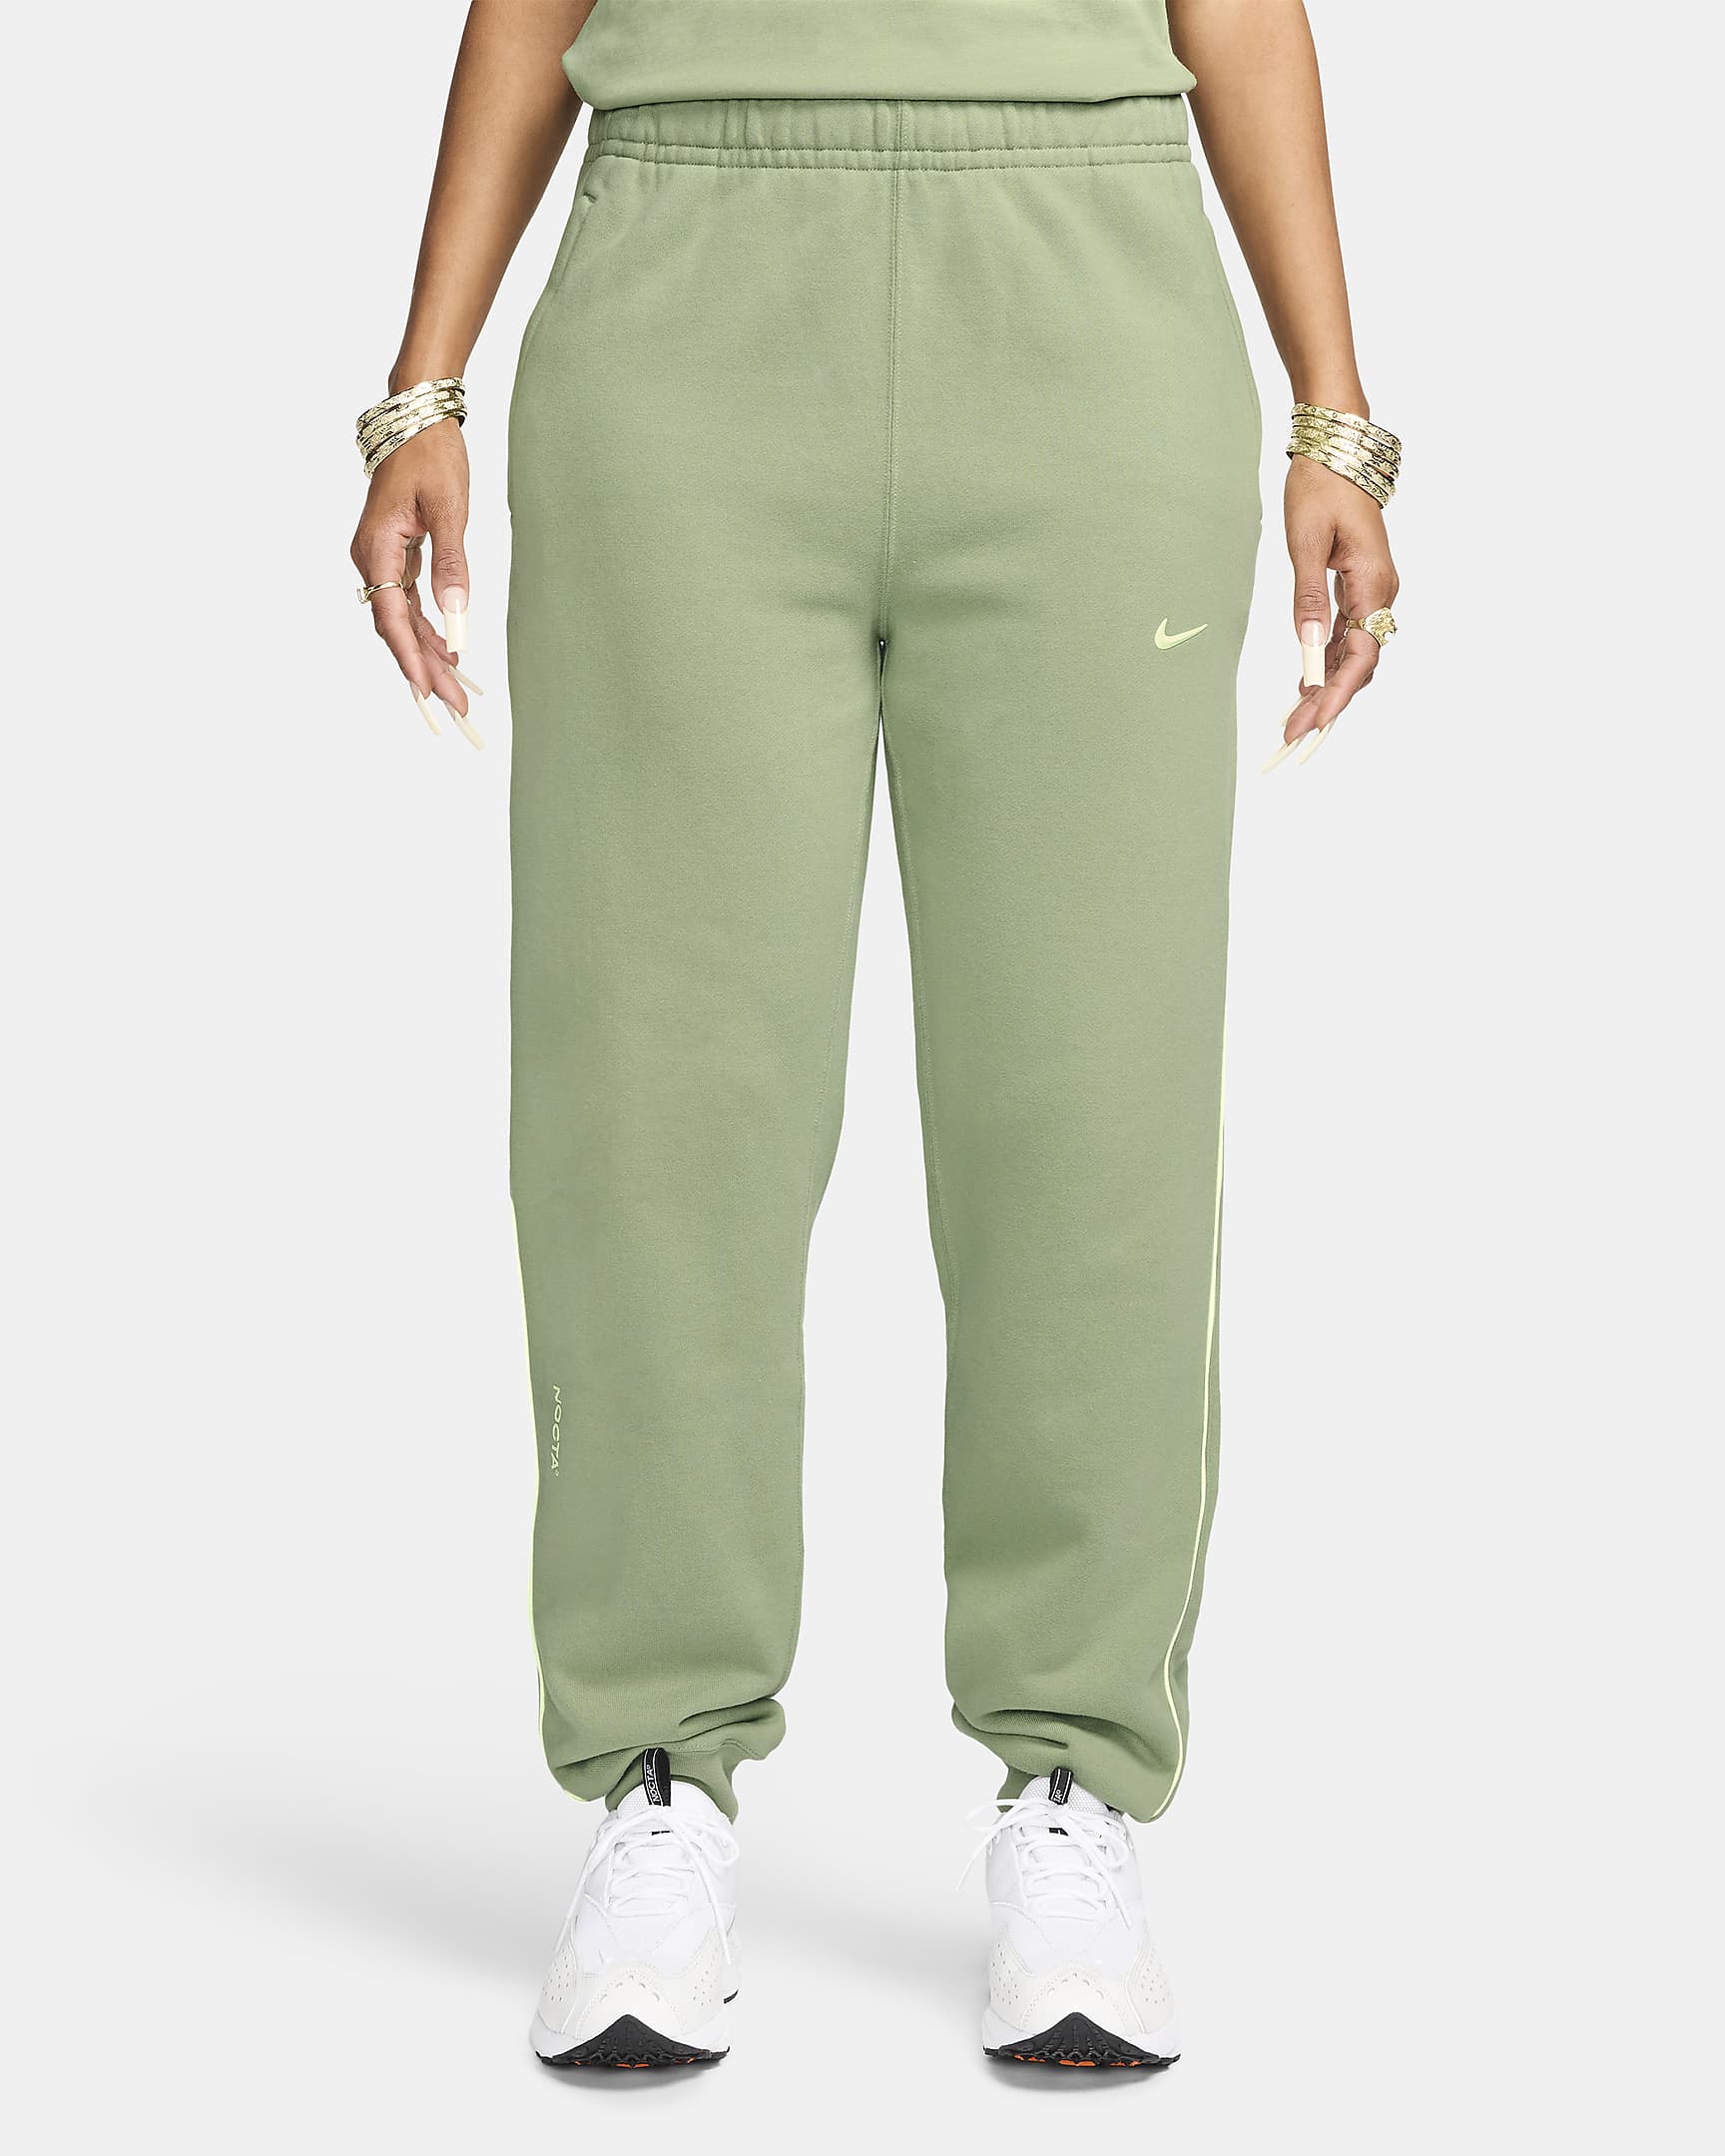 NOCTA Fleece Trousers. Nike HU